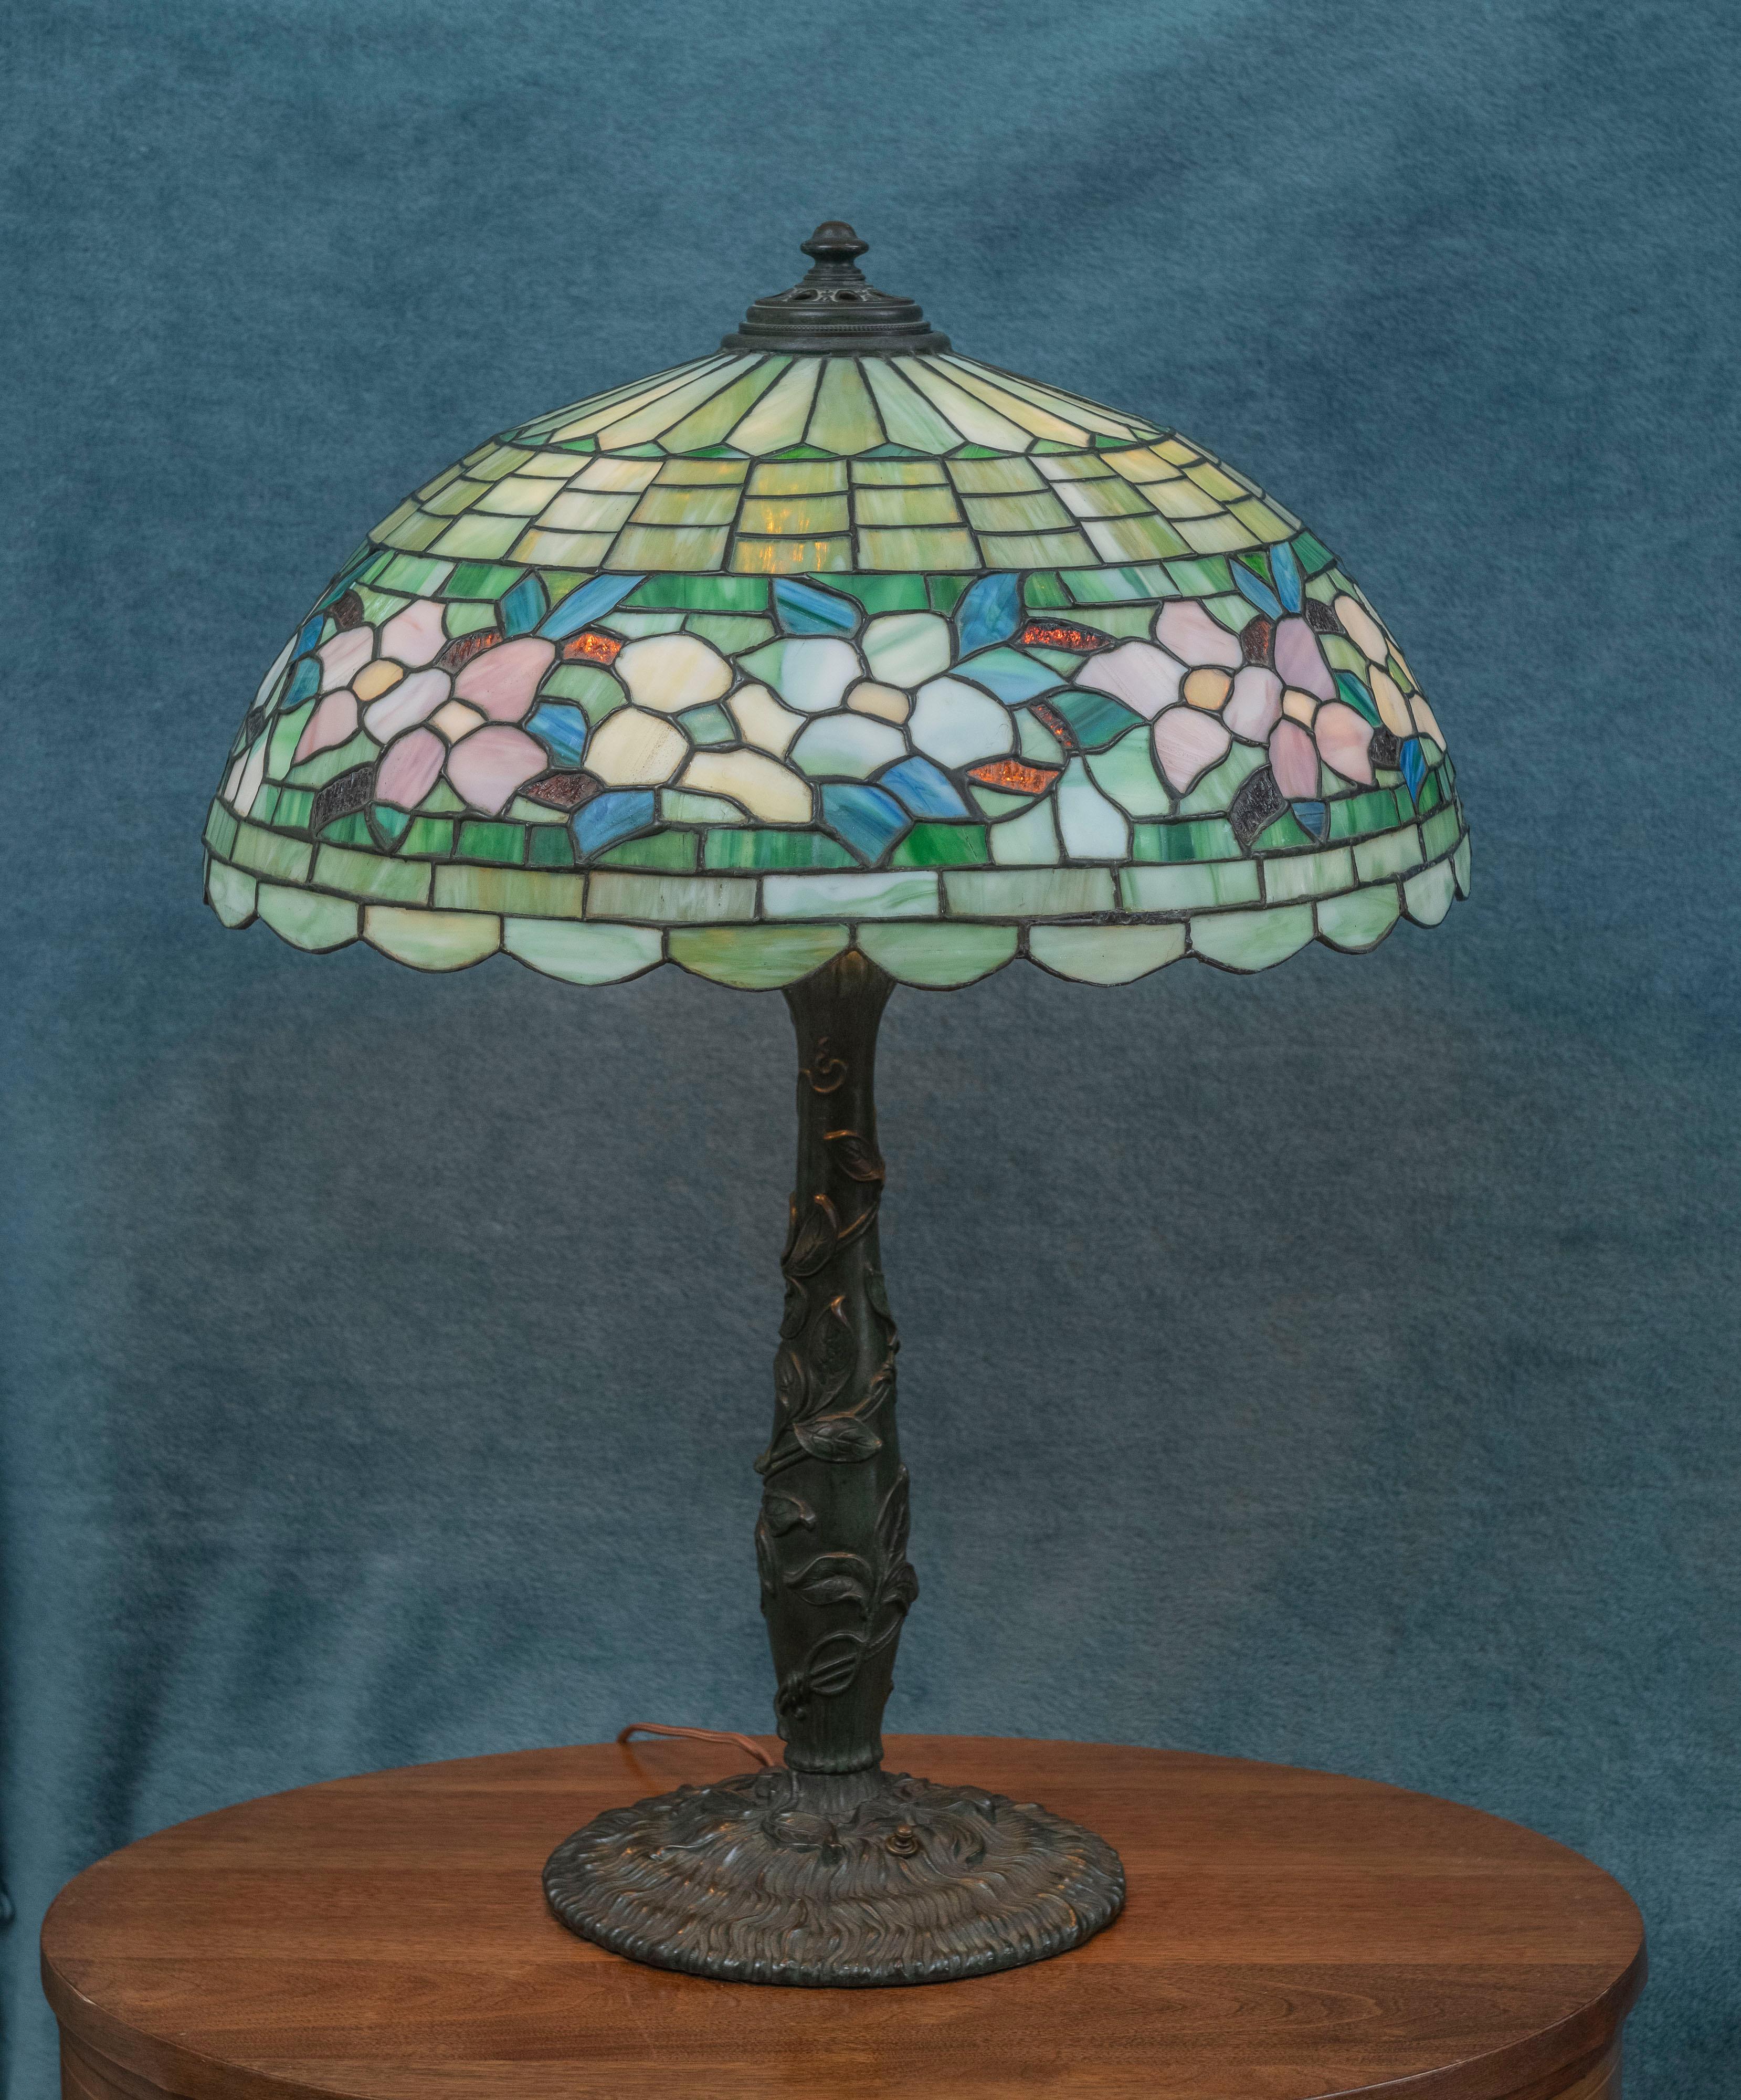  Diese hochwertige und farbenfrohe Lampe von Wilkinson ist ein schönes Beispiel für seine Kunstfertigkeit. Dieser Schirm mit Blumenbordüre aus Hartriegel ist oben auf Seite 166 im Buch Mosaic Shades Volume II von Paul Crist abgebildet. Unser Sockel